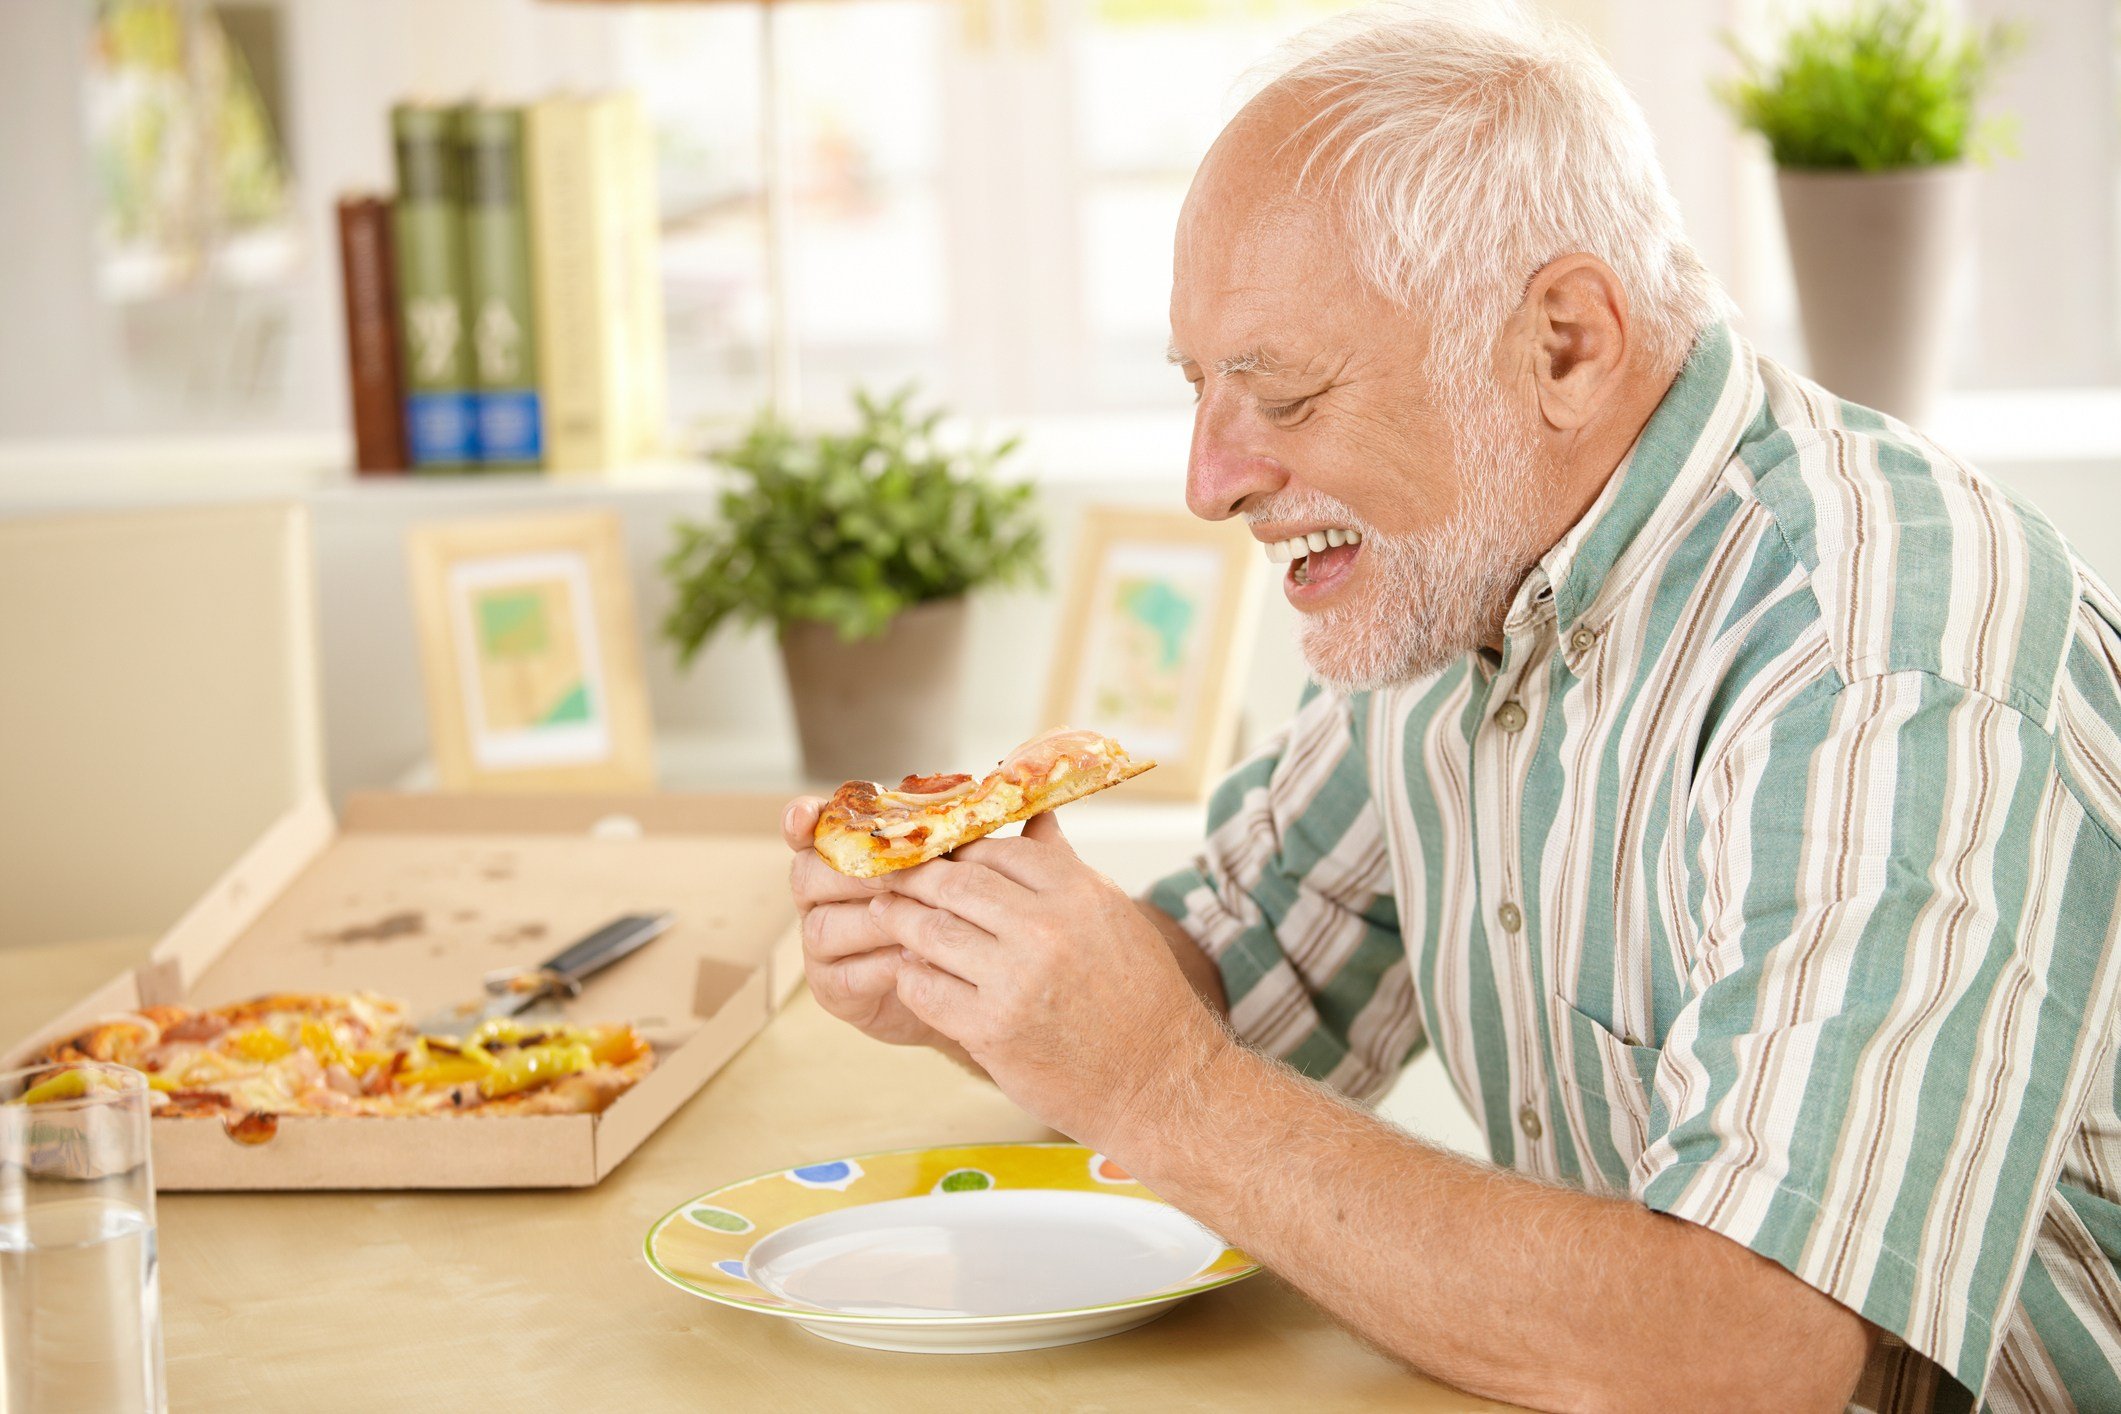 Smiling older man eating pizza